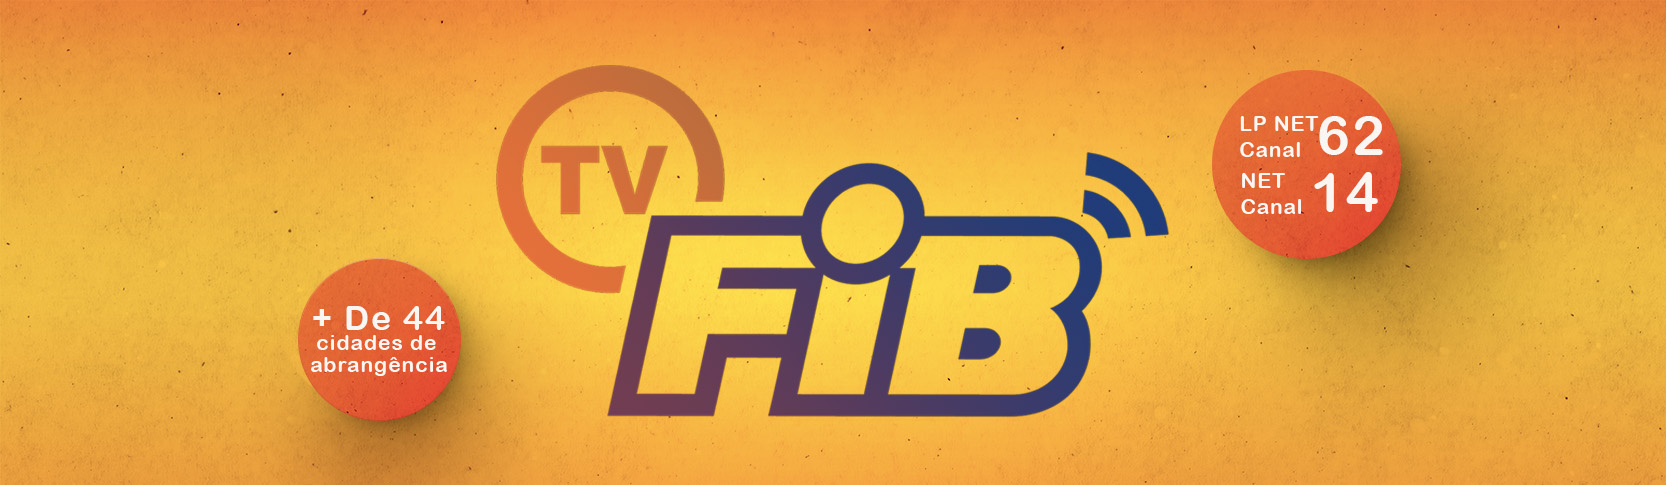 TV FIB